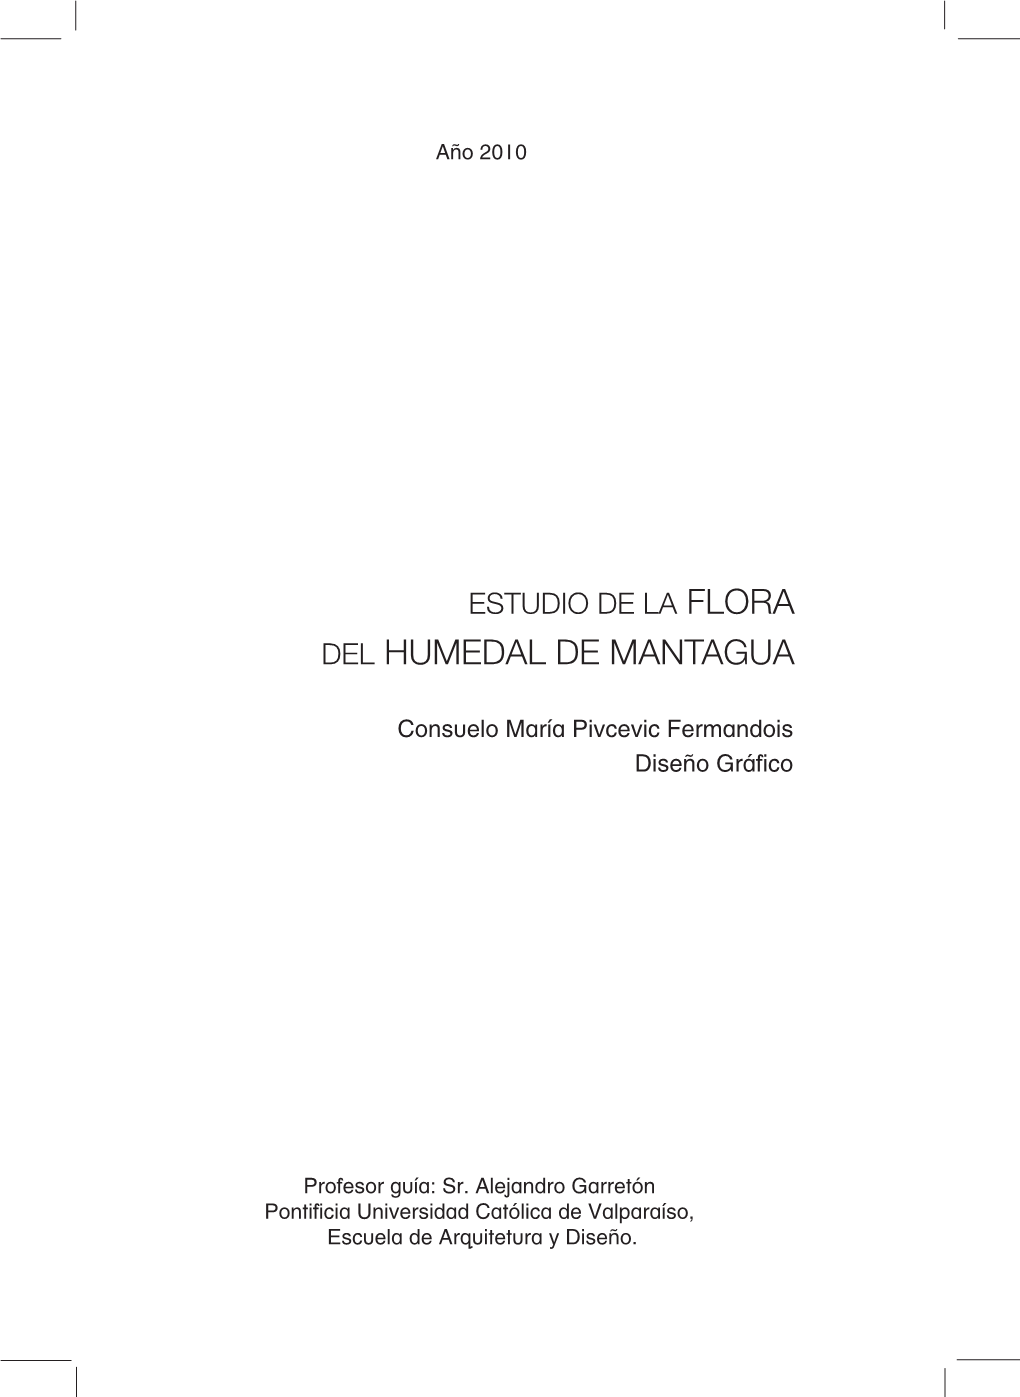 Estudio De La Flora Del Humedal De Mantagua